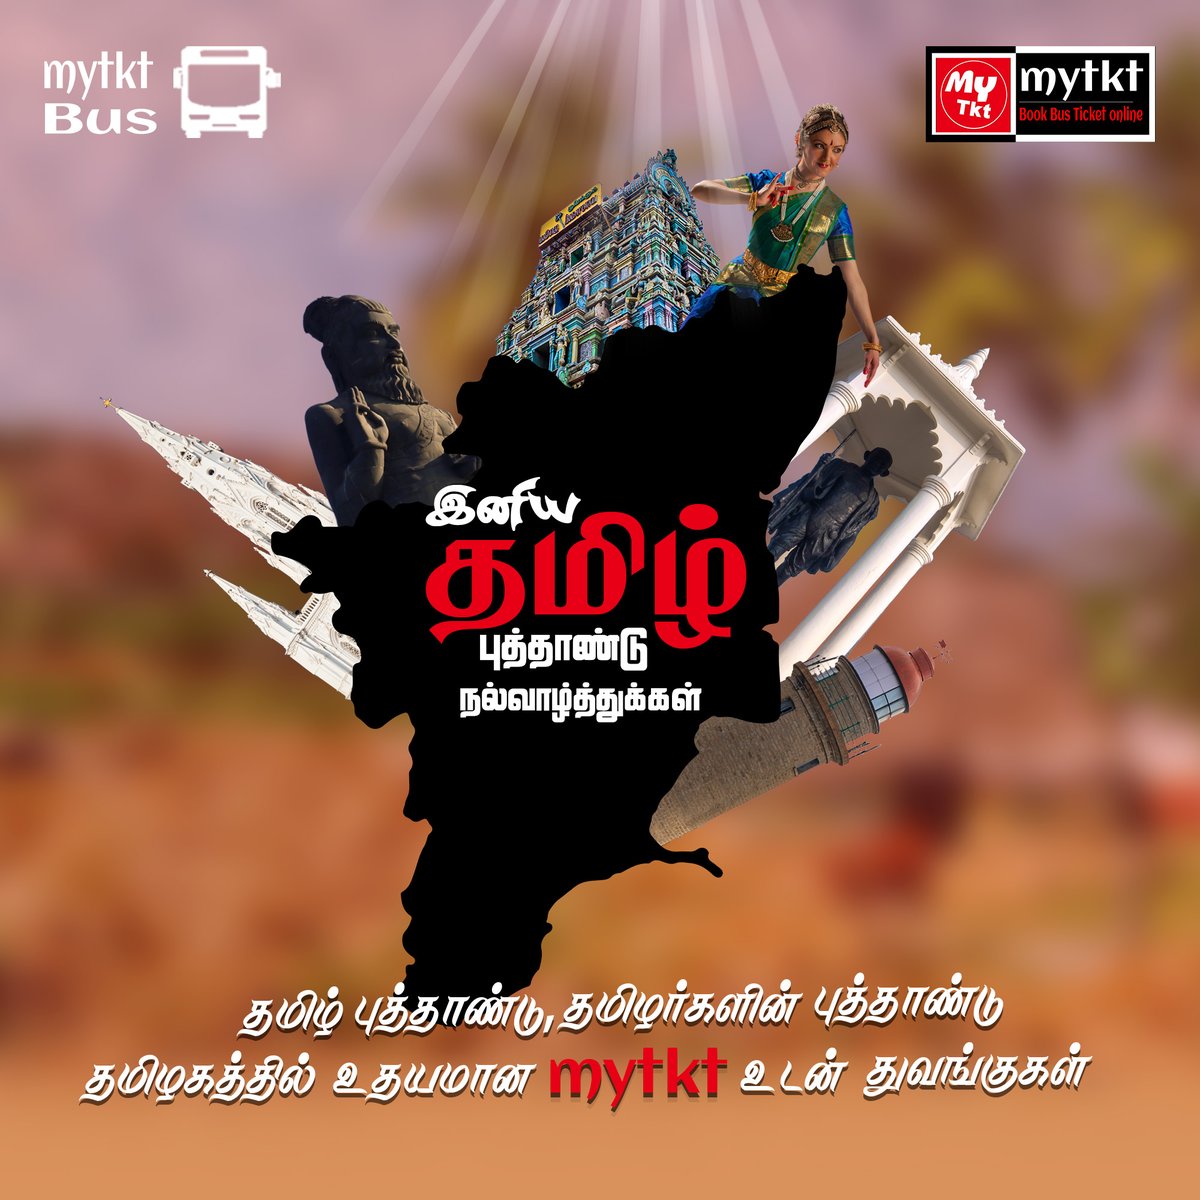 'MYTKT'
'இனிய தமிழ் புத்தாண்டு நல்வாழ்த்துக்கள்'
#mytkt #tamilnewyear #tamilputhandu #Tamil #TamilNadu #puthandu #tamilnadu #indianfestival  #happynewyear #tn #tamilan #tamilan #celabration #traditional #HinduNewYear #tamilnewyear2024